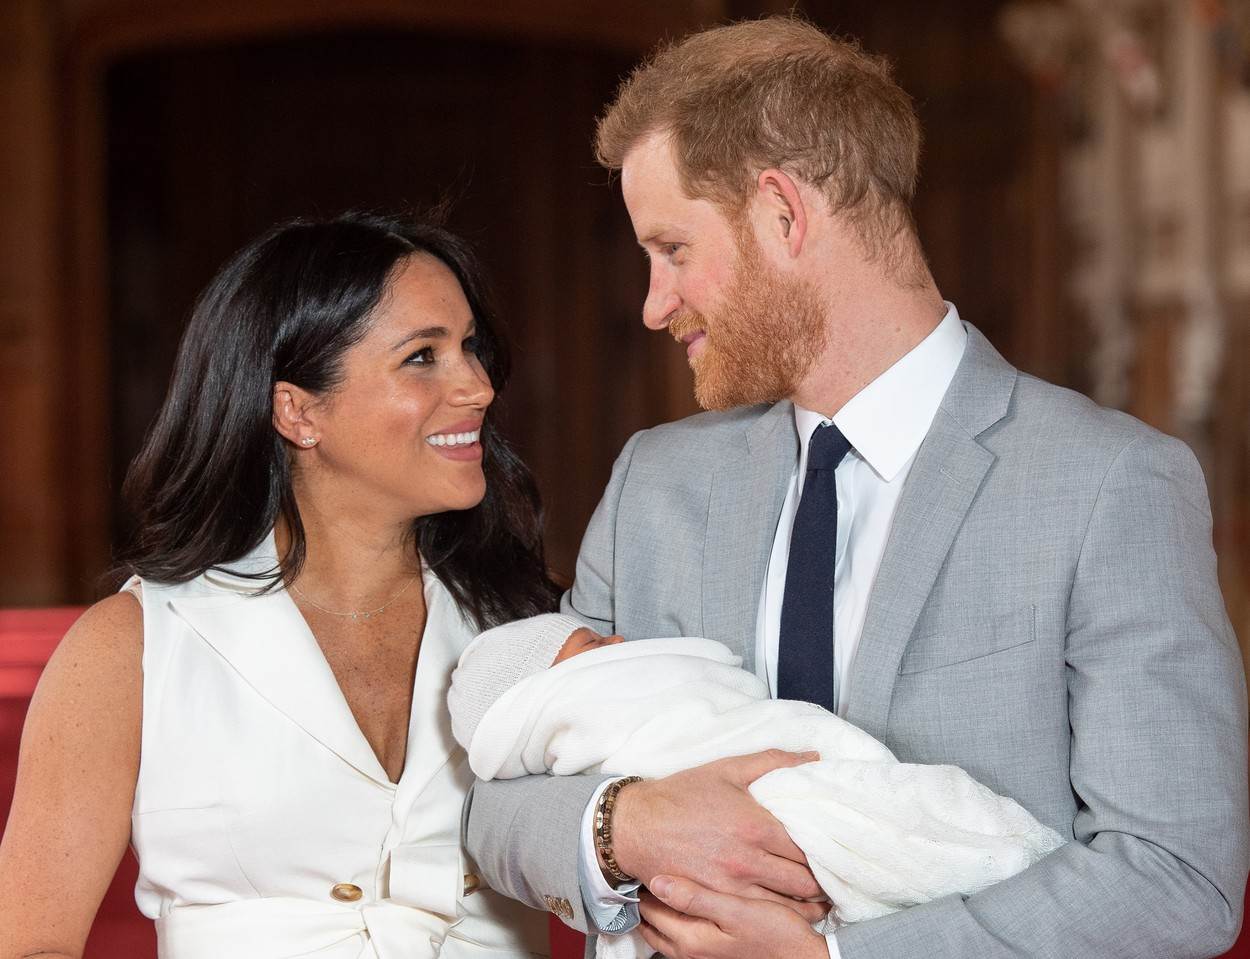  Megan Markl i princ Hari sa sinim arčijem nakon njegovog rođenja. 